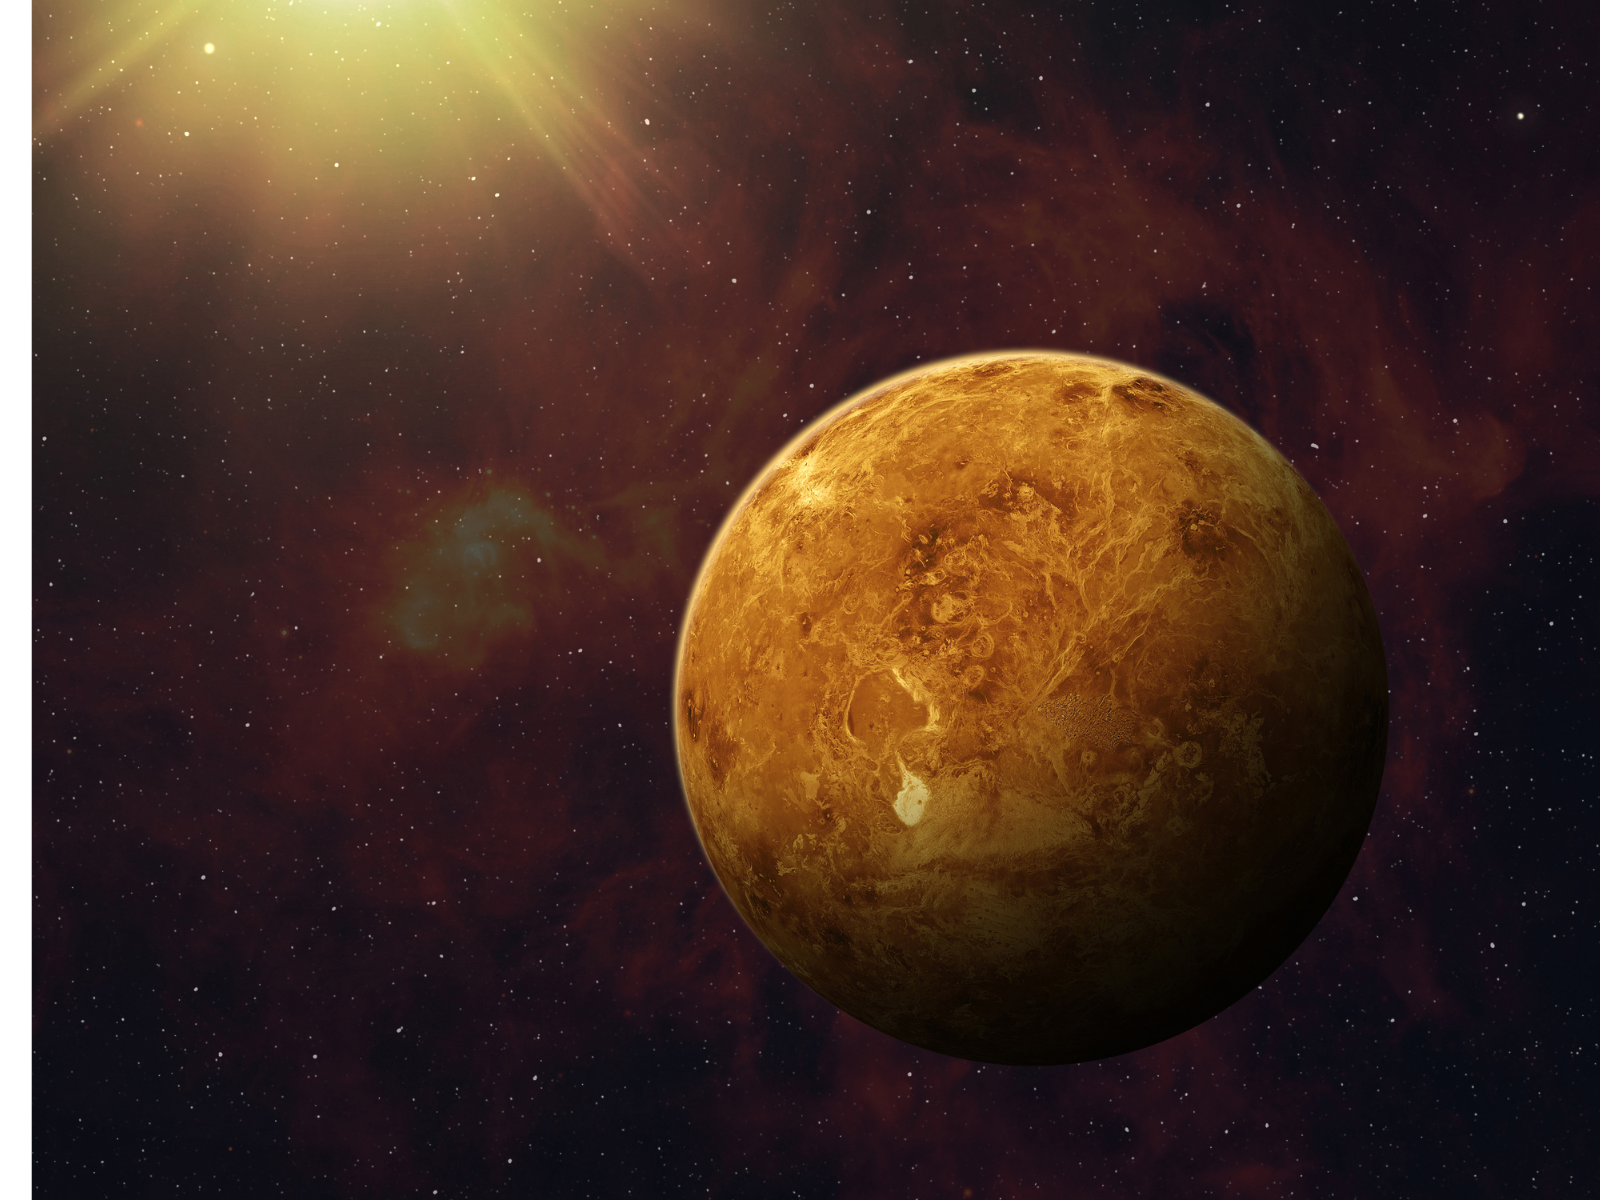 Vênus influencia o horóscopo para o Dia dos Namorados, veja! Foto: Vênus, reprodução/Canva